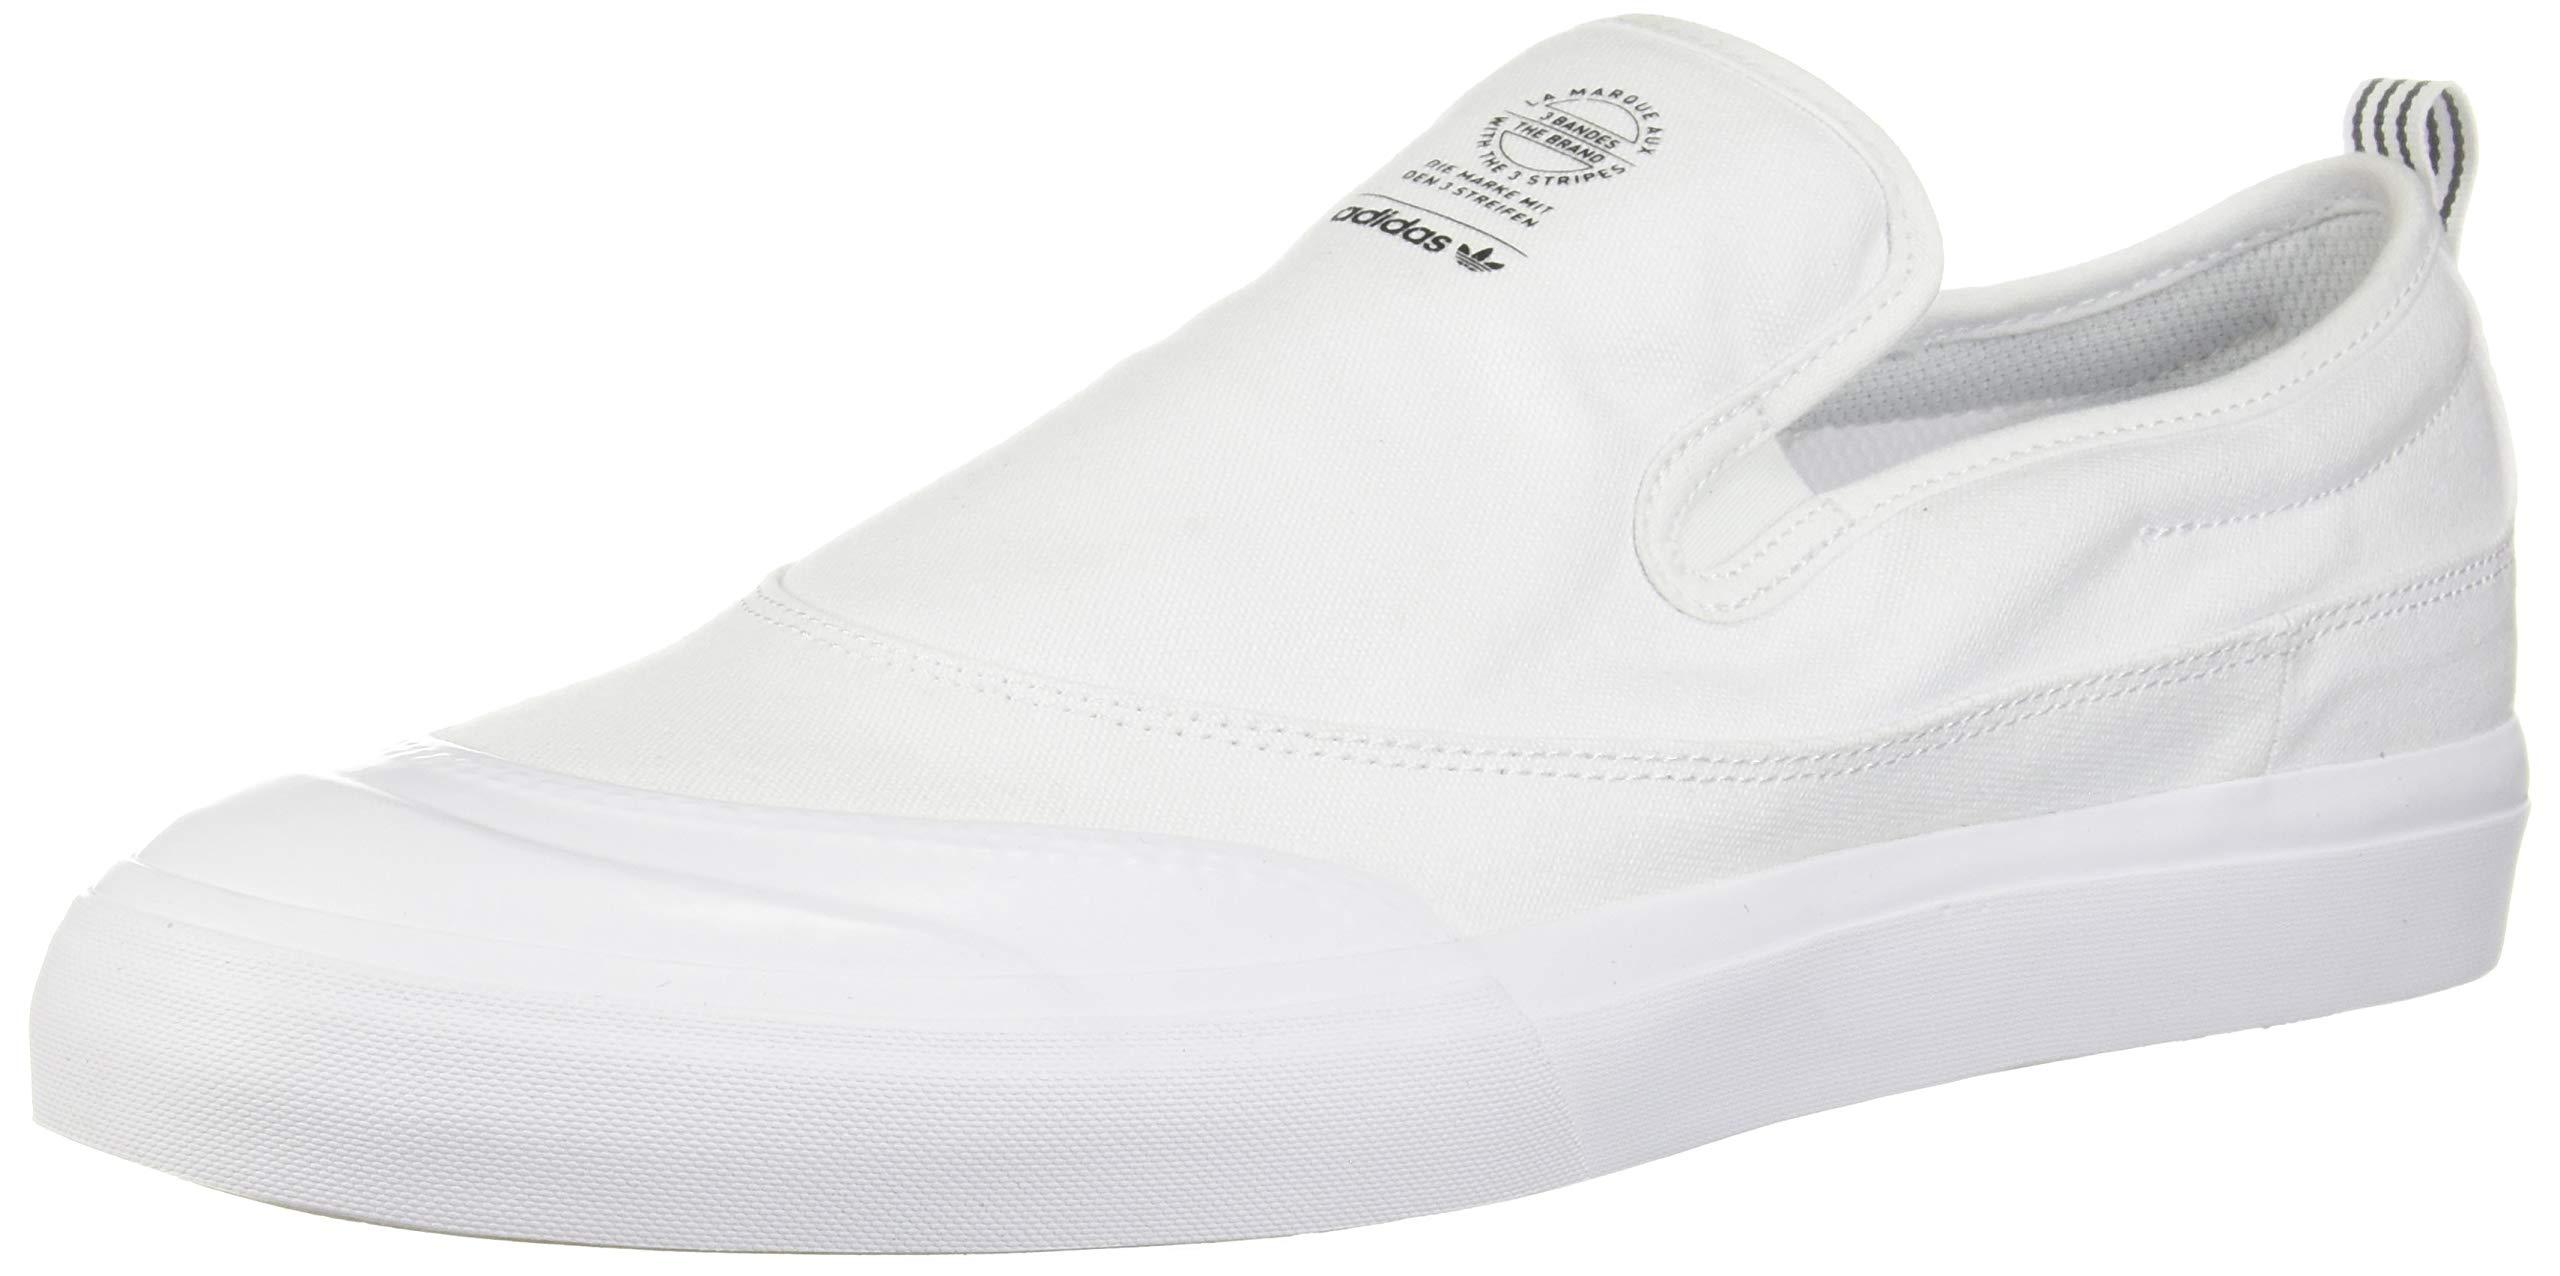 adidas Matchcourt Fashion Sneakers in White/White/White (White) for Men |  Lyst